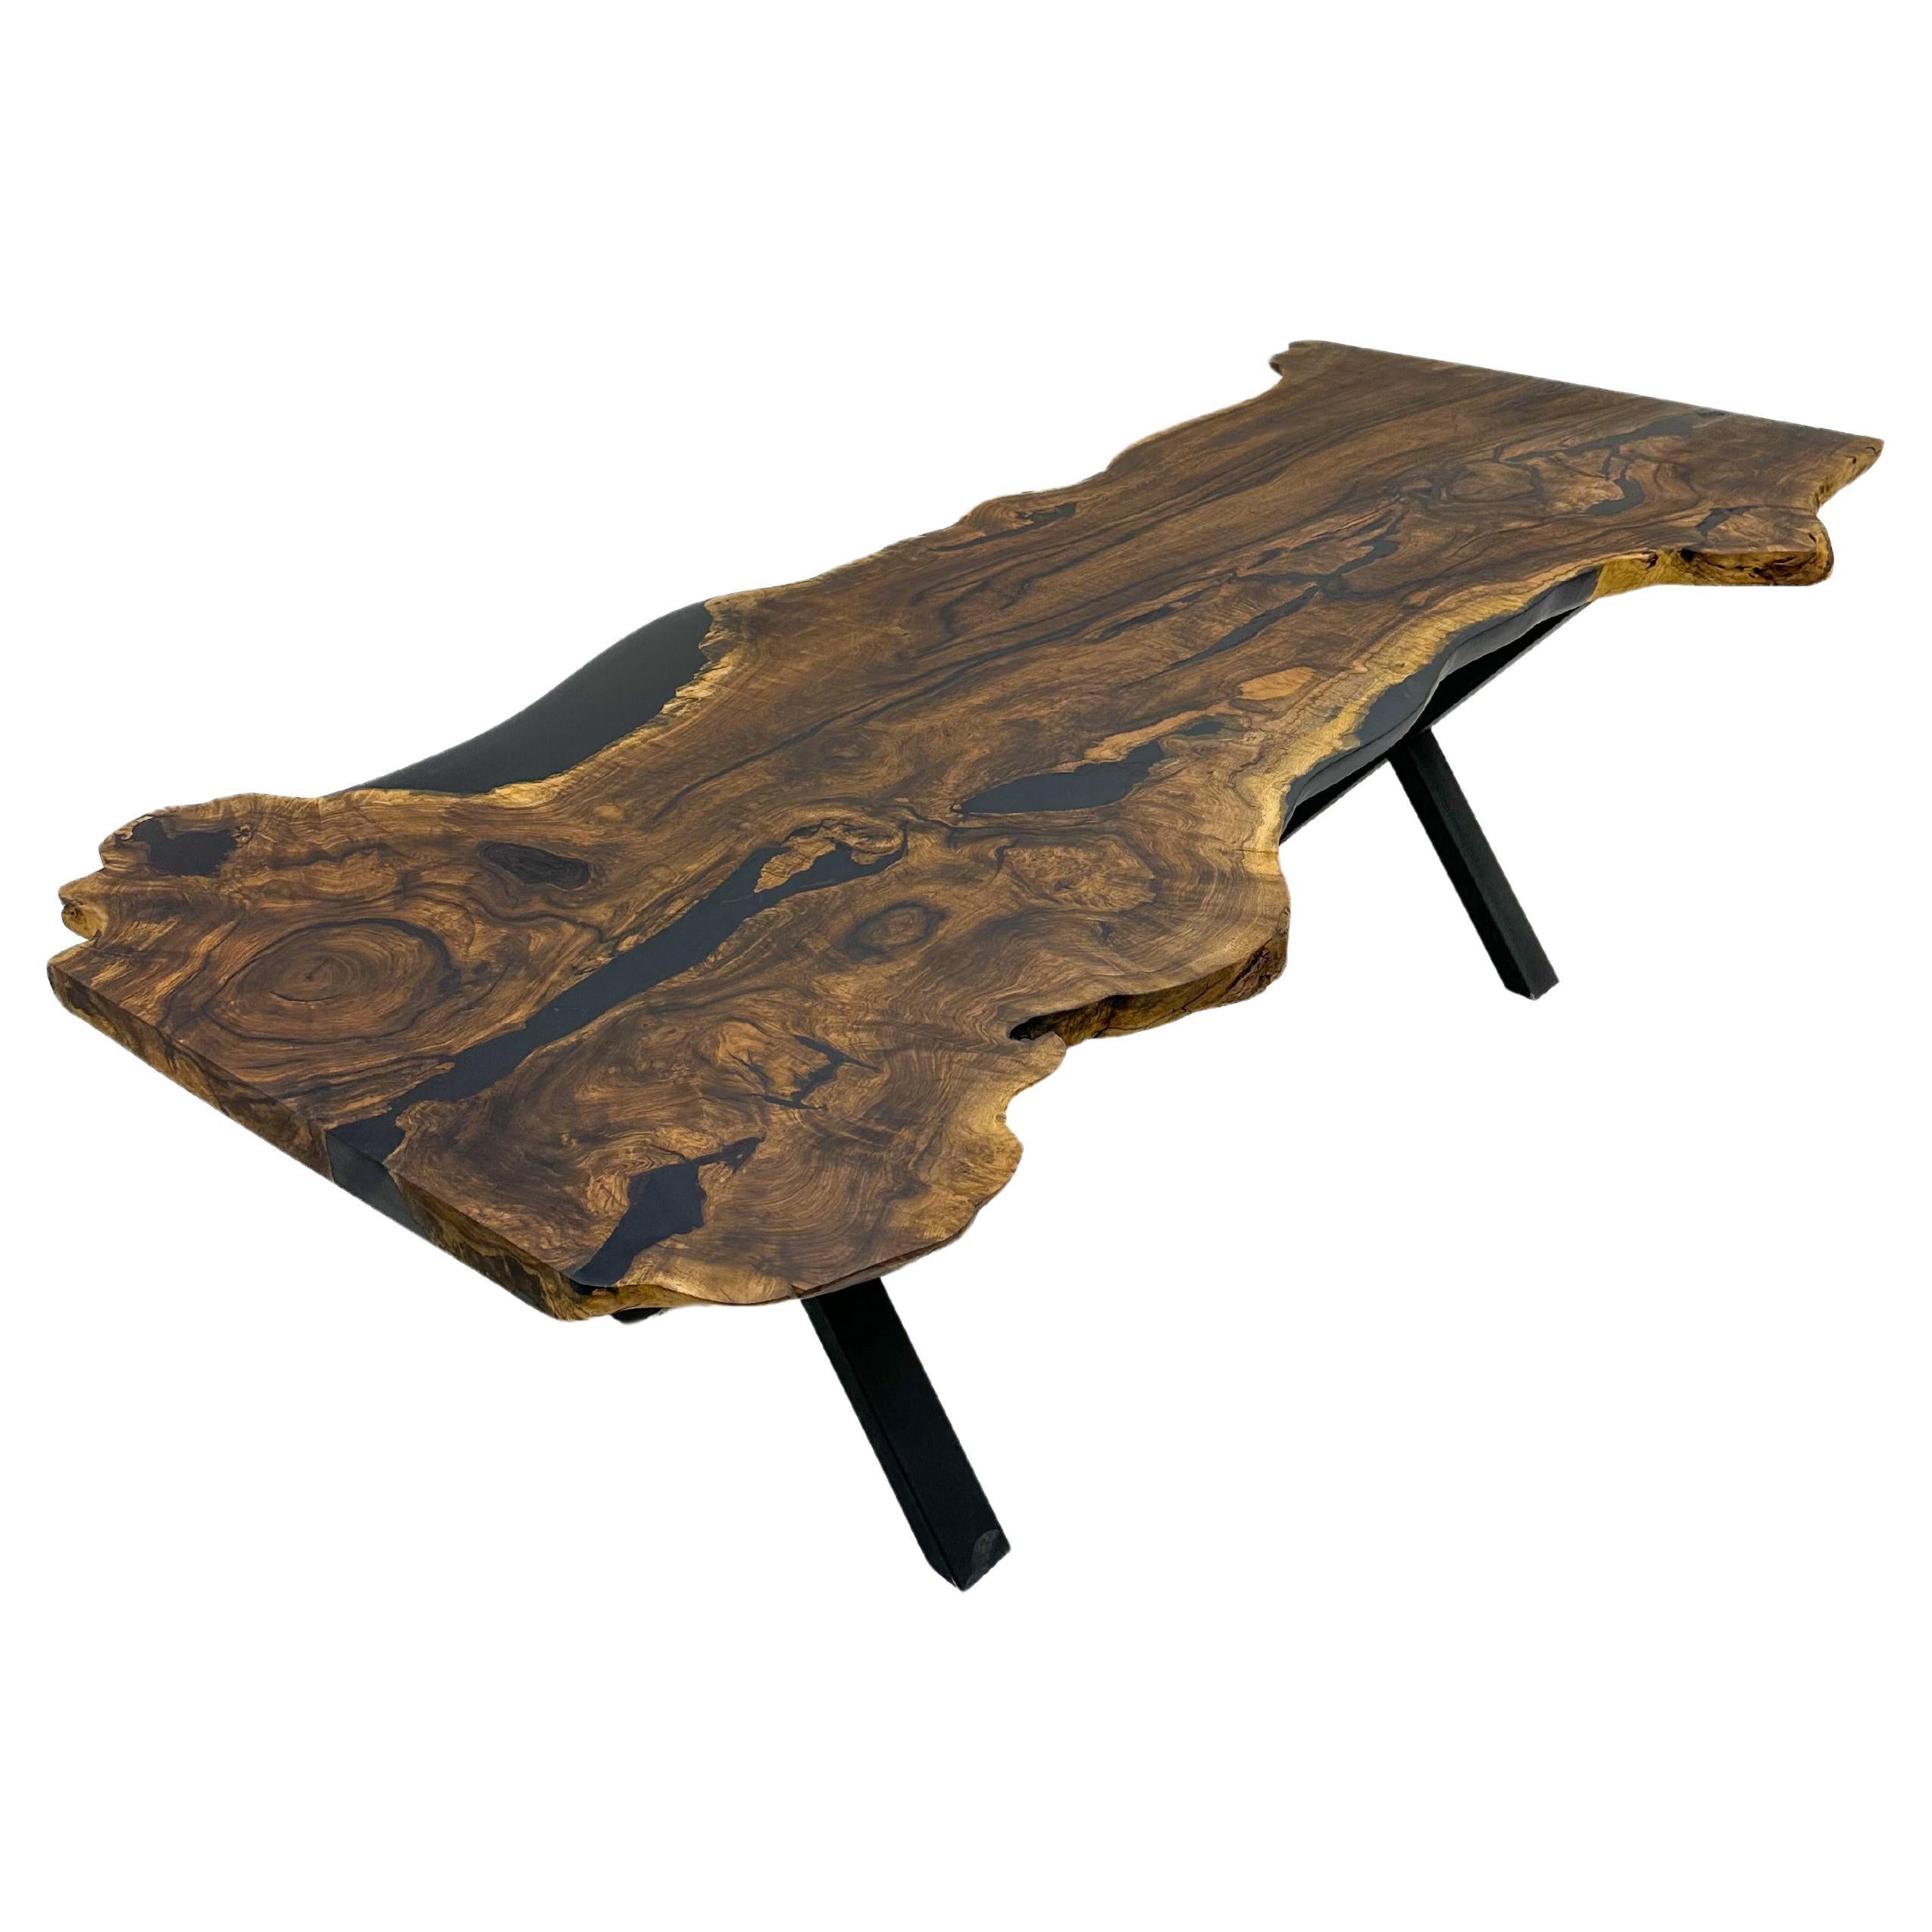 KONFERENZTISCH WALNUSS LIVE EDGE

Dieser Tisch ist aus natürlichen Walnussplatten gefertigt. 

Einige Nussbaumplatten sind von natürlicher Schönheit, da ihre eine Seite eine große Rundung aufweist. Dies ist einer von ihnen! 

Wir haben die Risse mit